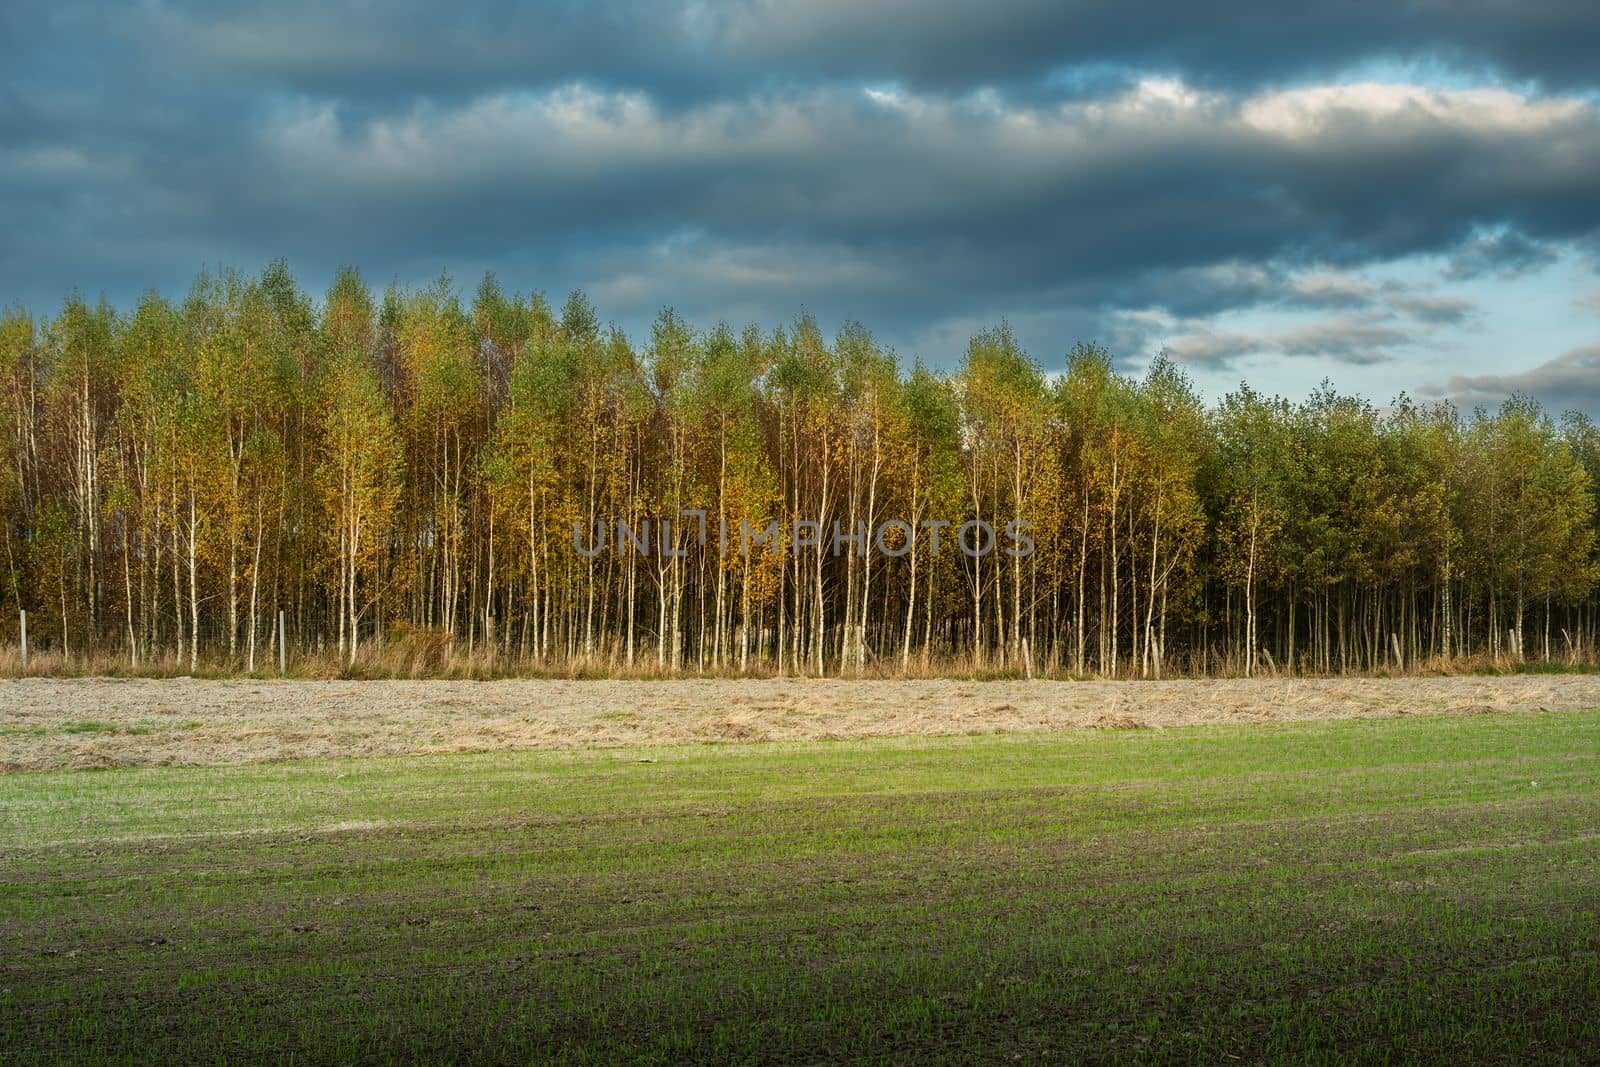 Cloudy sky over the autumn forest and farmland, eastern Poland